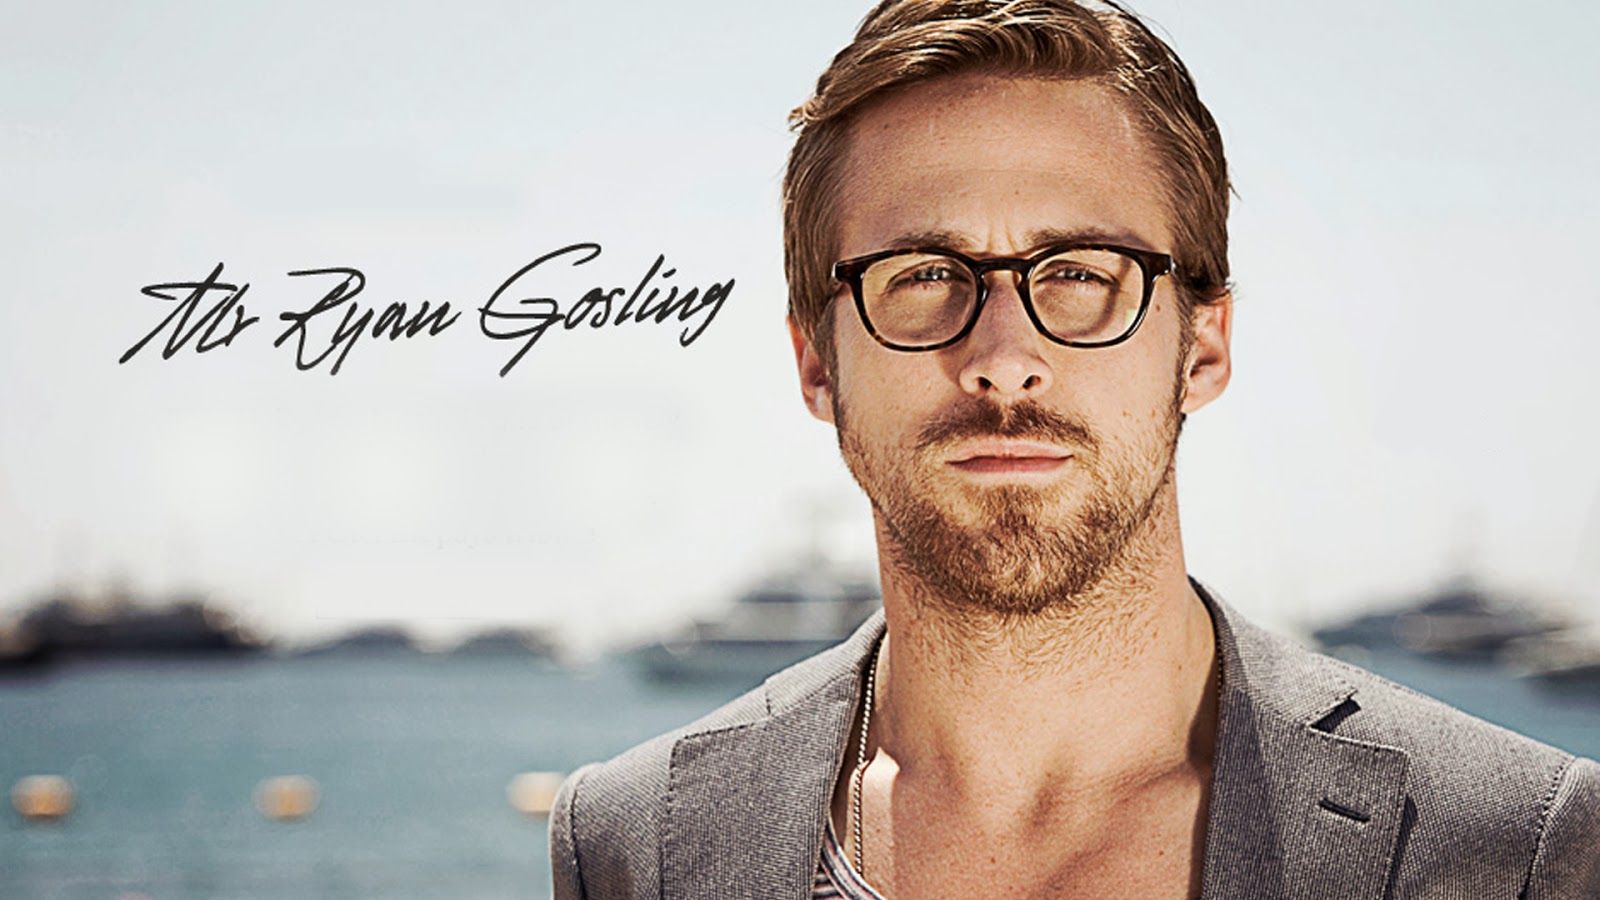 76+] Ryan Gosling Wallpaper - WallpaperSafari